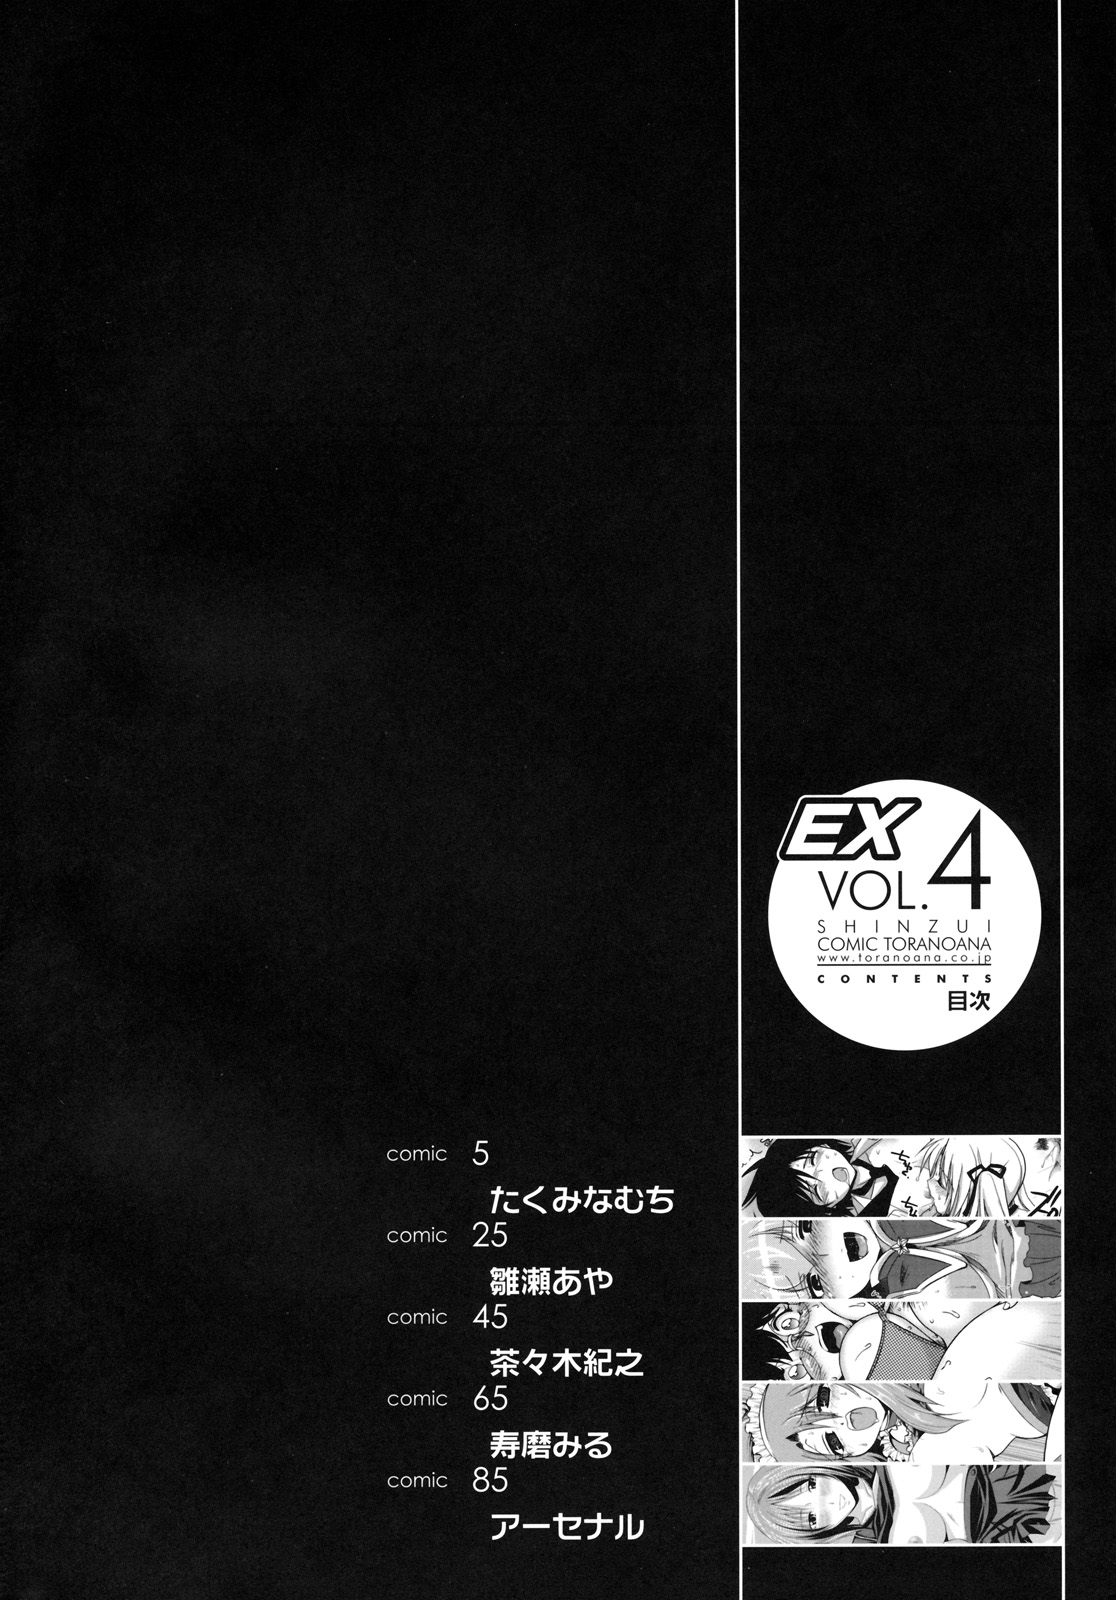 [Toranoana] Shinzui EX VOL.4 (Original) (同人誌) [とらのあな] 真髄 EX VOL.4 (オリジナル)